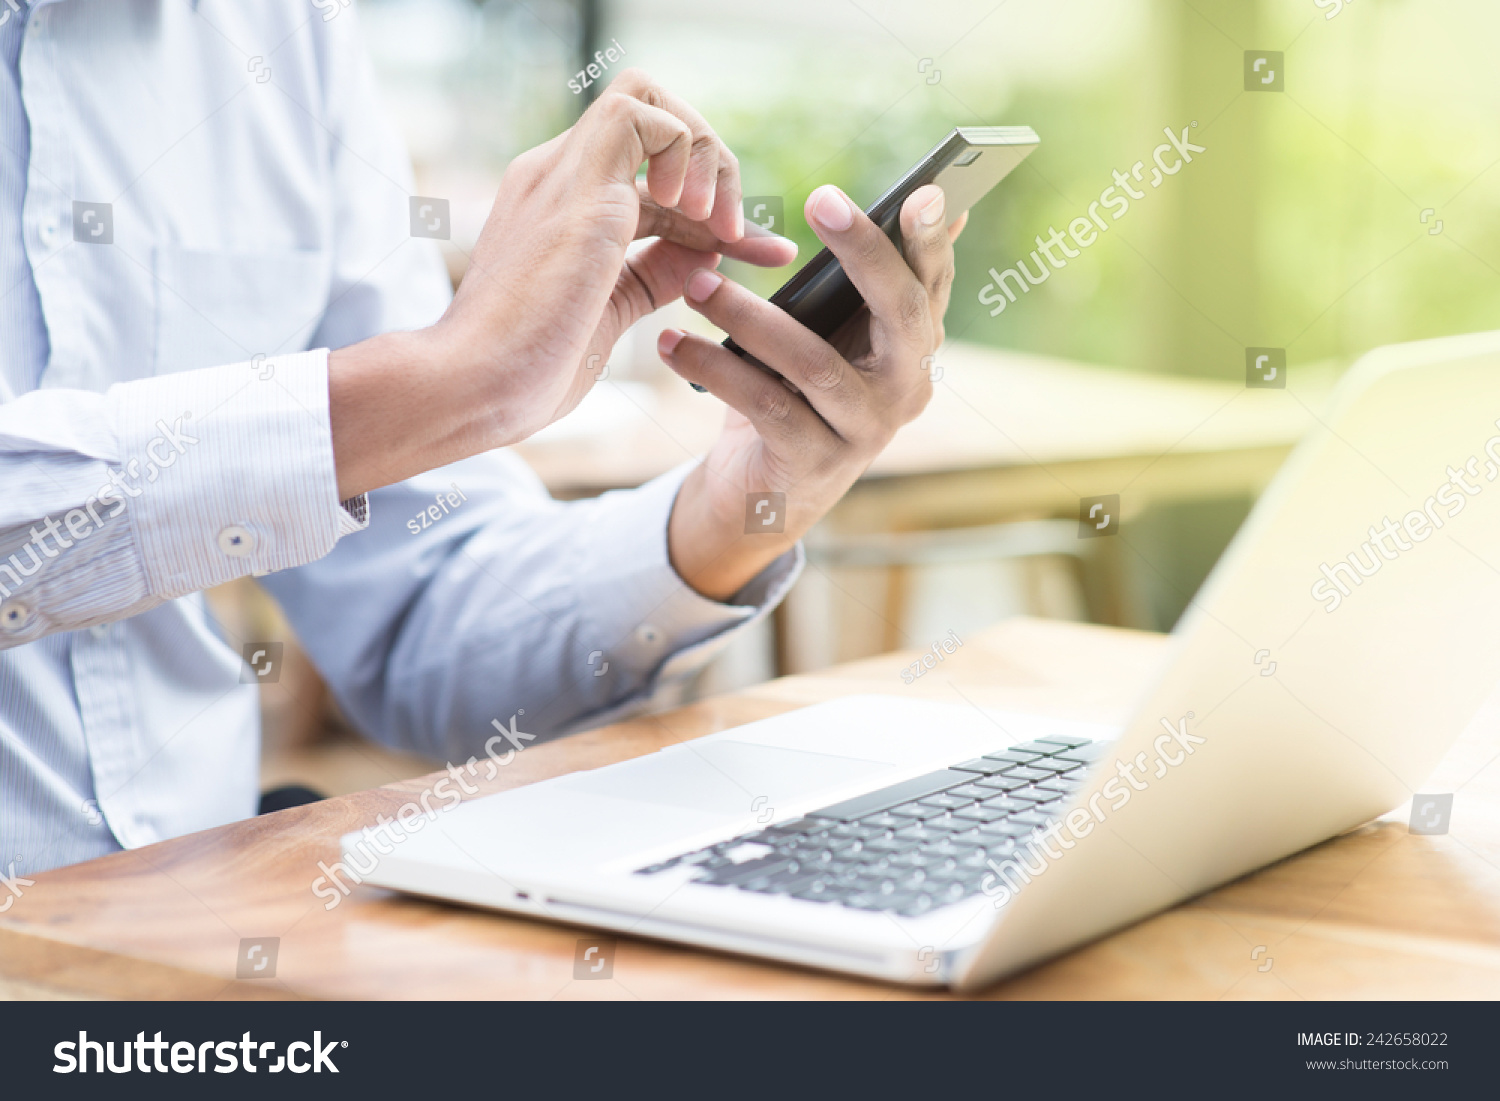 度商人使用智能手机和笔记本电脑在户外自助餐